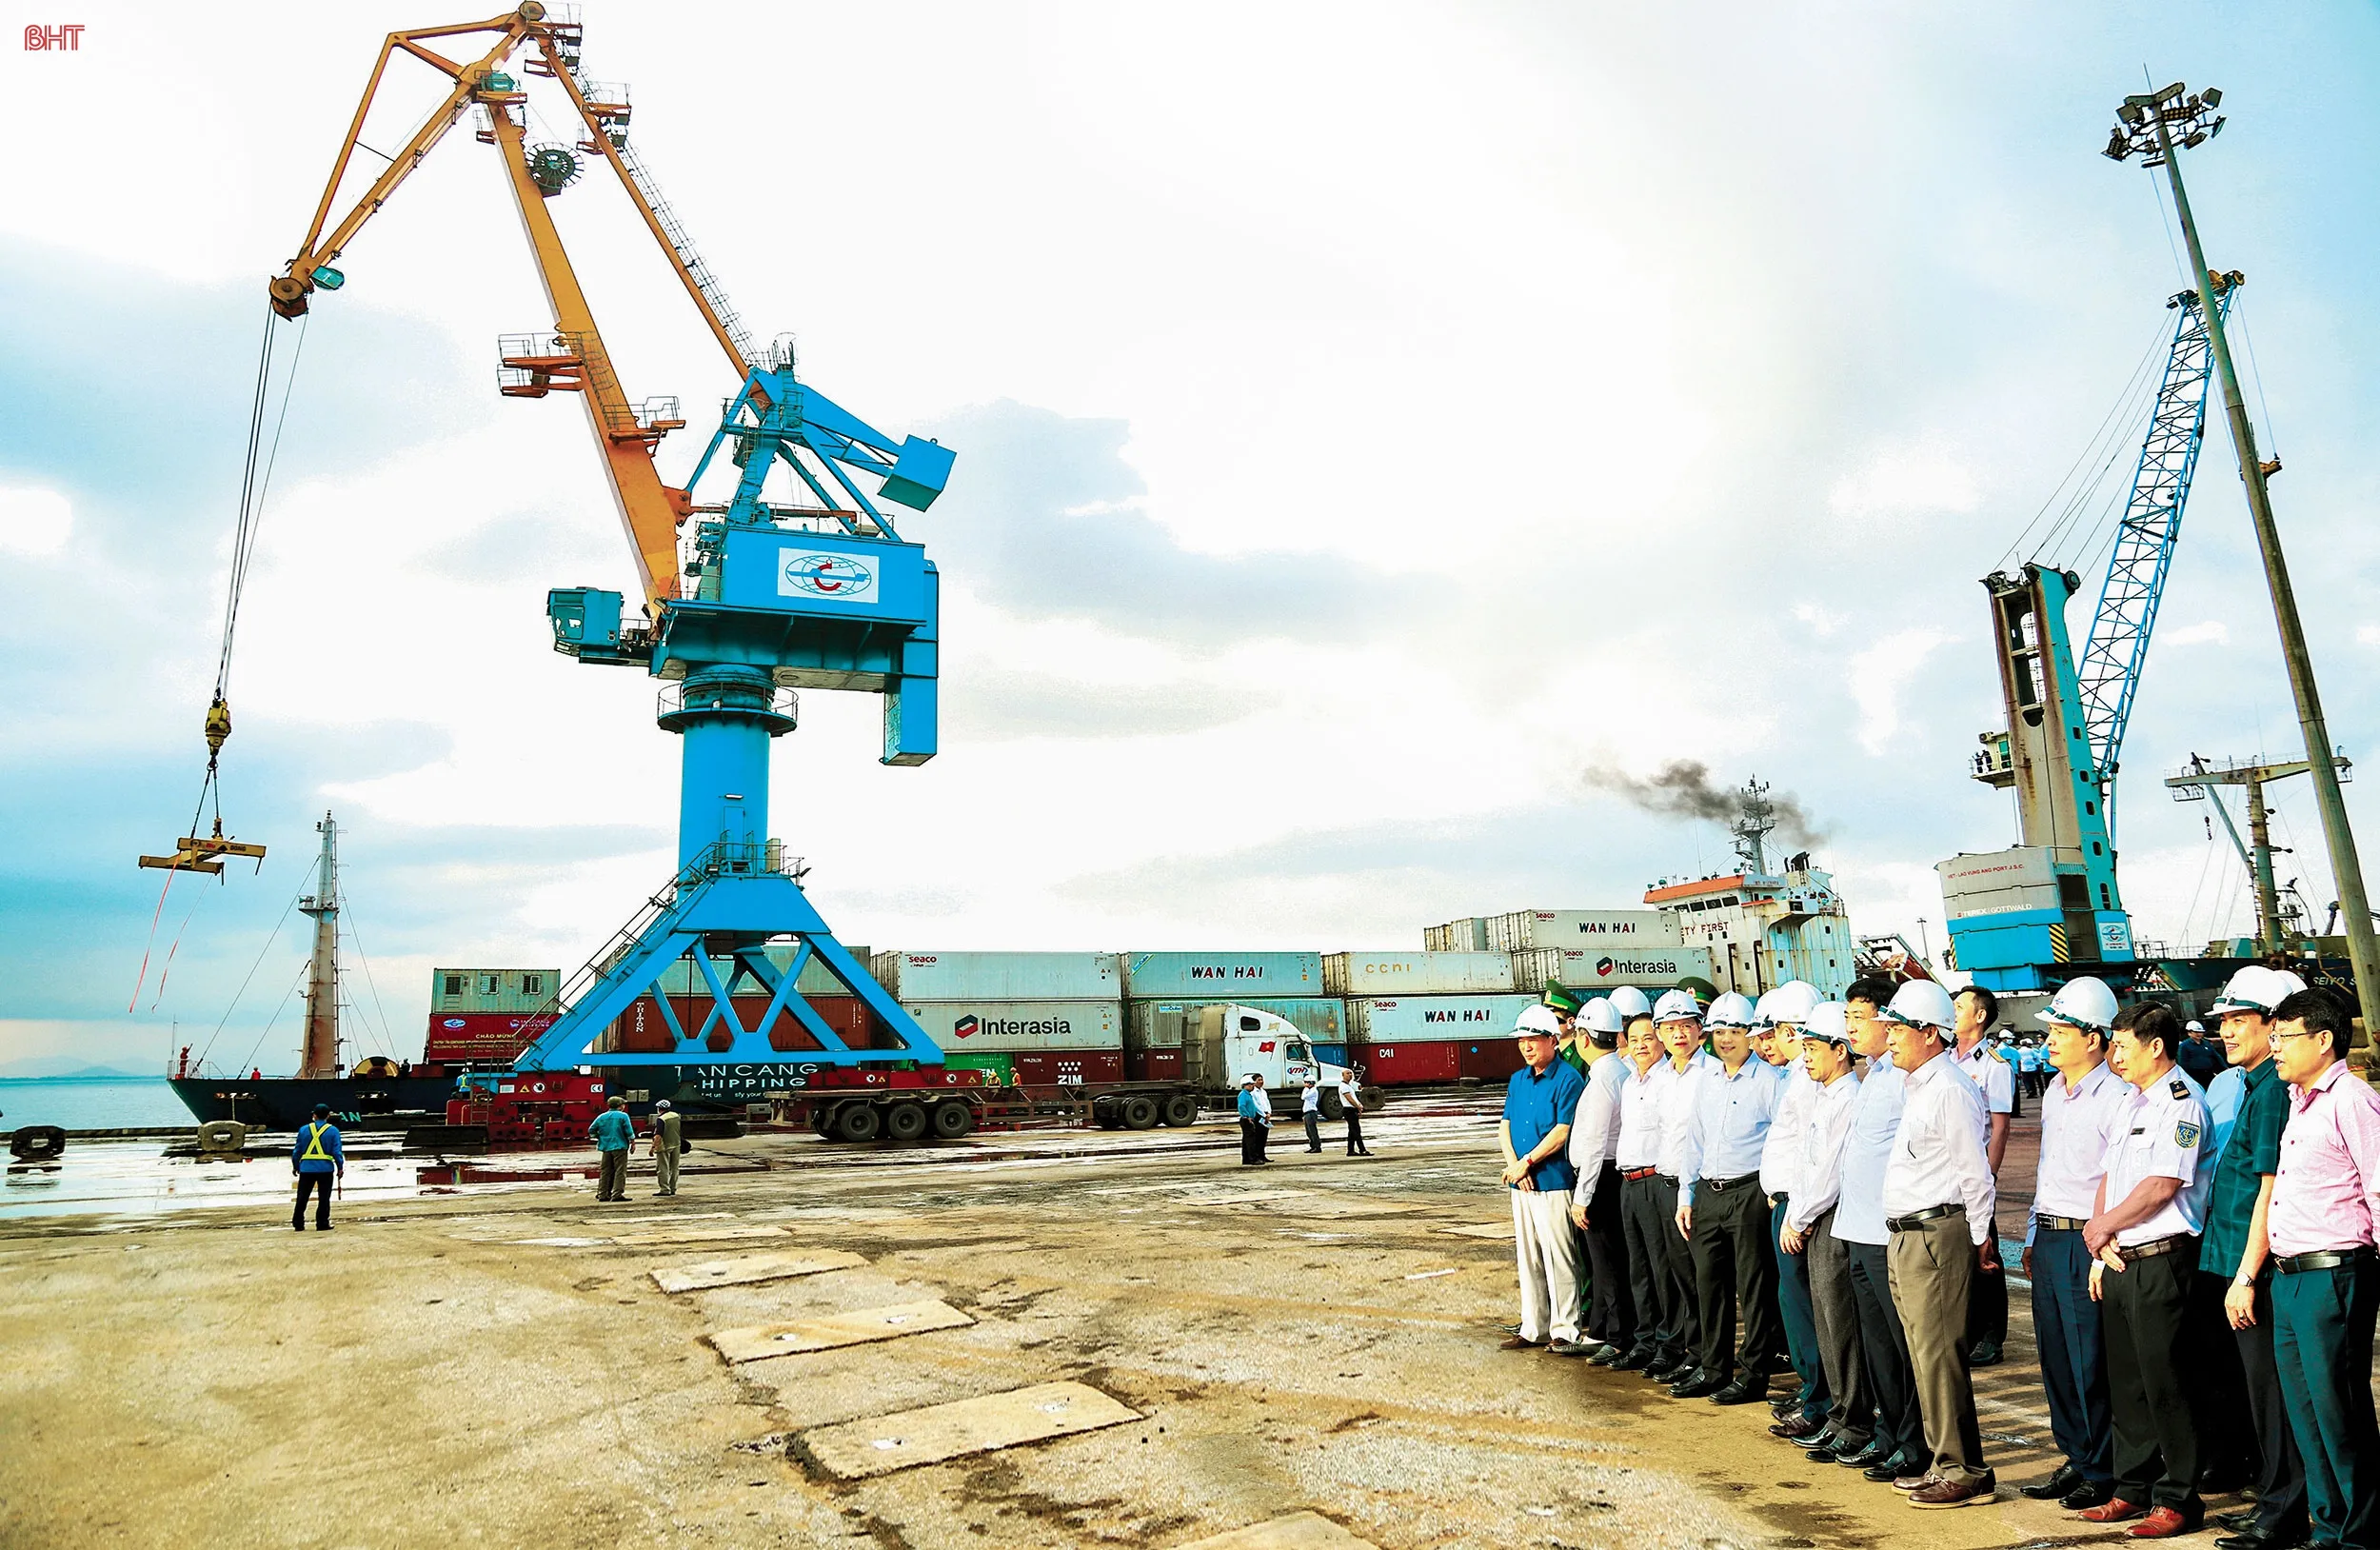 Xây dựng Khu kinh tế Vũng Áng trở thành trung tâm logistics tầm cỡ quốc tế (bài 1): Khai thác lợi thế cảng biển Hà Tĩnh